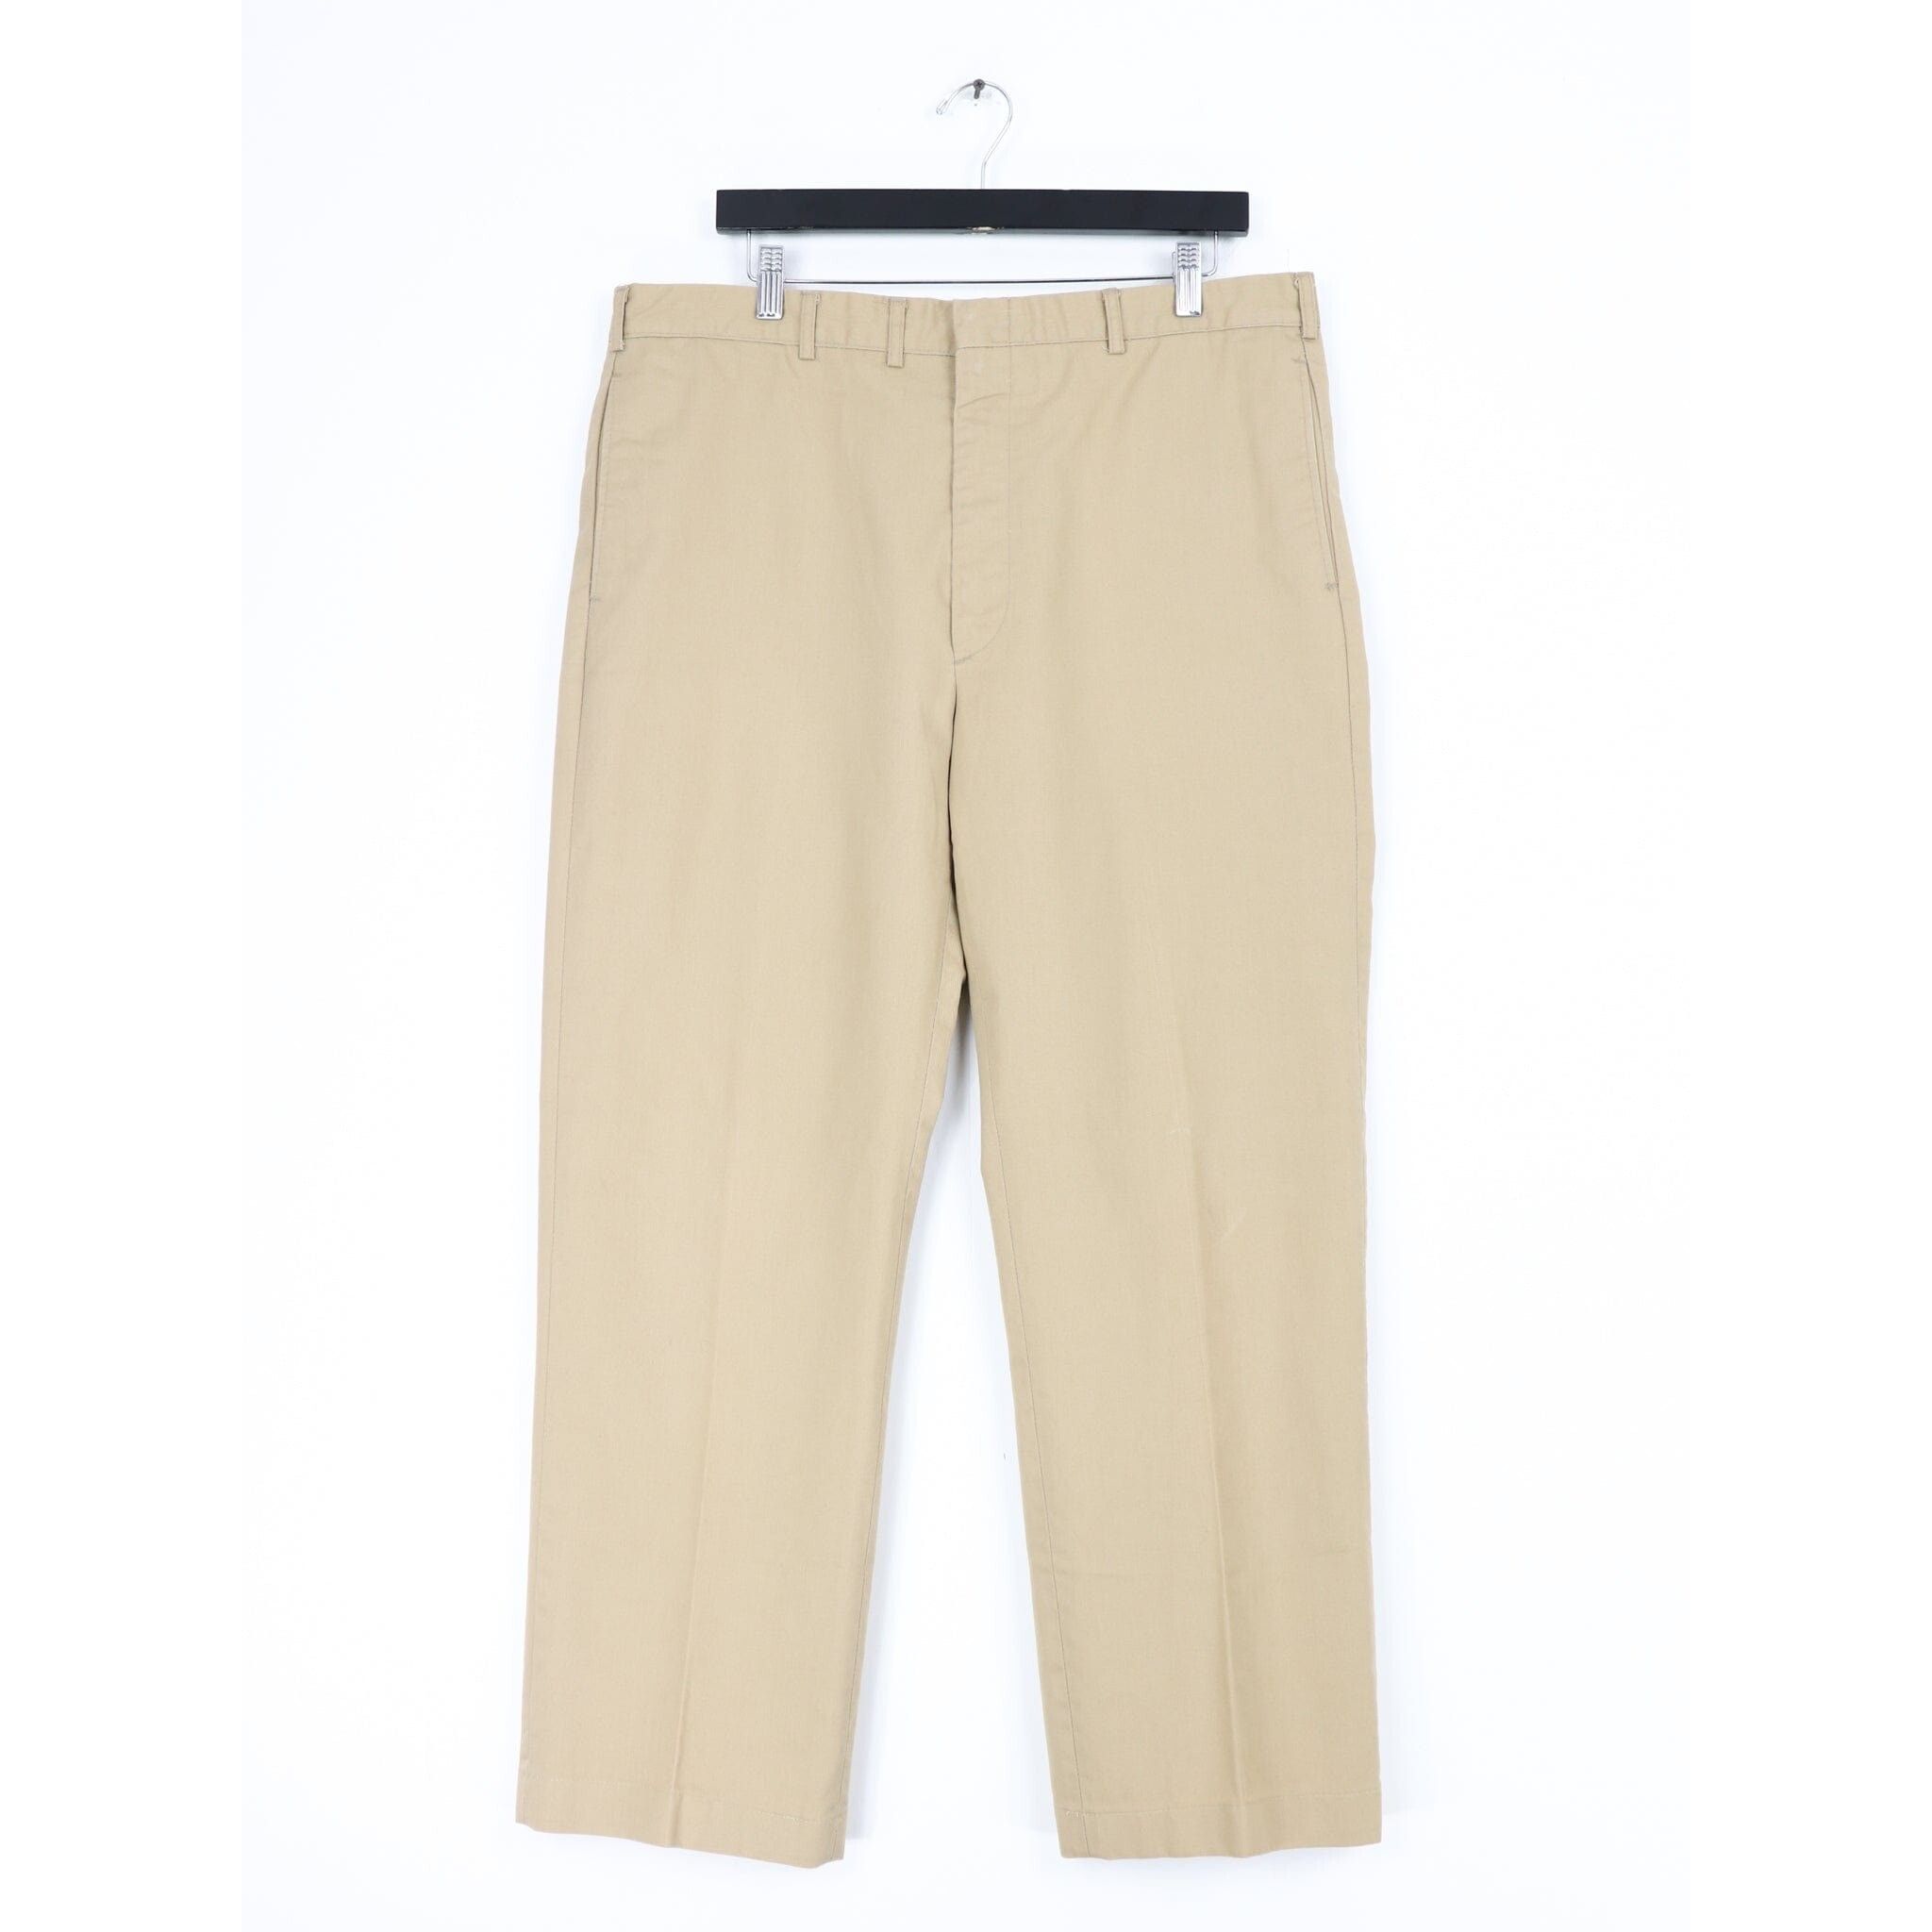 Vintage Vintage US Navy Creighton Uniform Pants Size 36 x 30 Size US 36 / EU 52 - 1 Preview